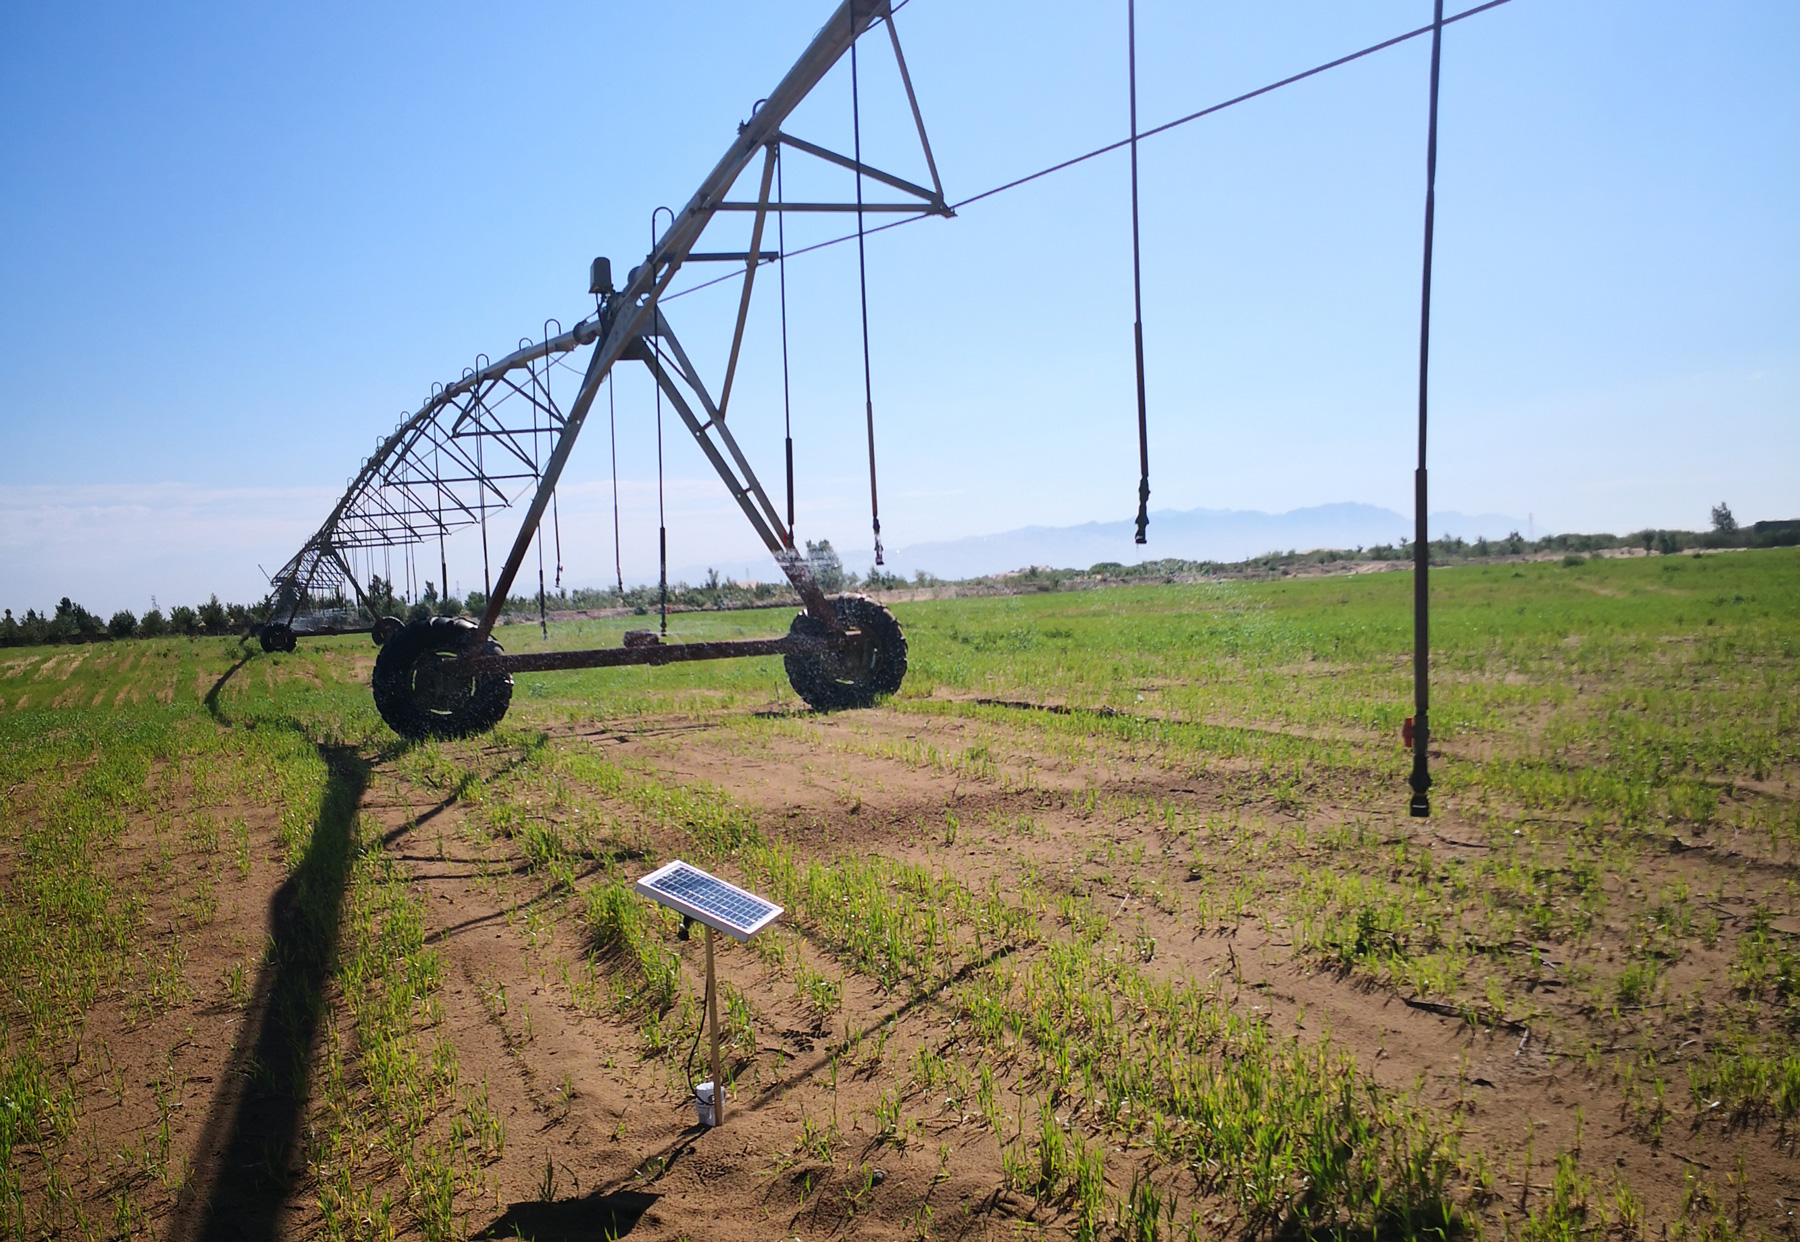 水肥一体化智能灌溉系统助力农业发展